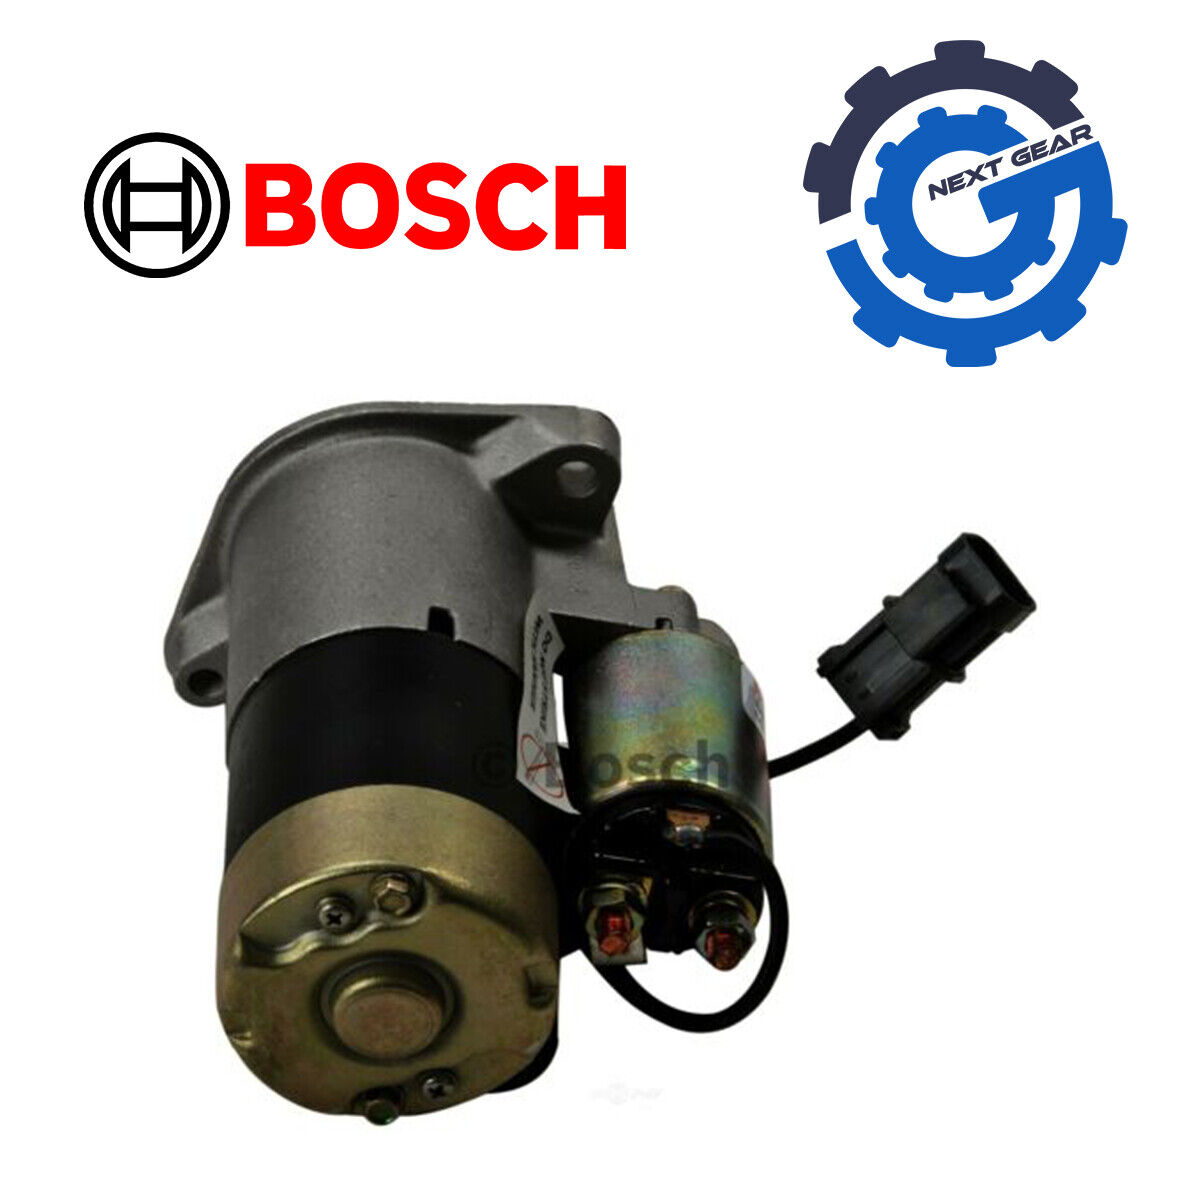 Bosch Starter Motor For 1988-1989 Nissan Pulsar NX 1.8L-L4 SR247X